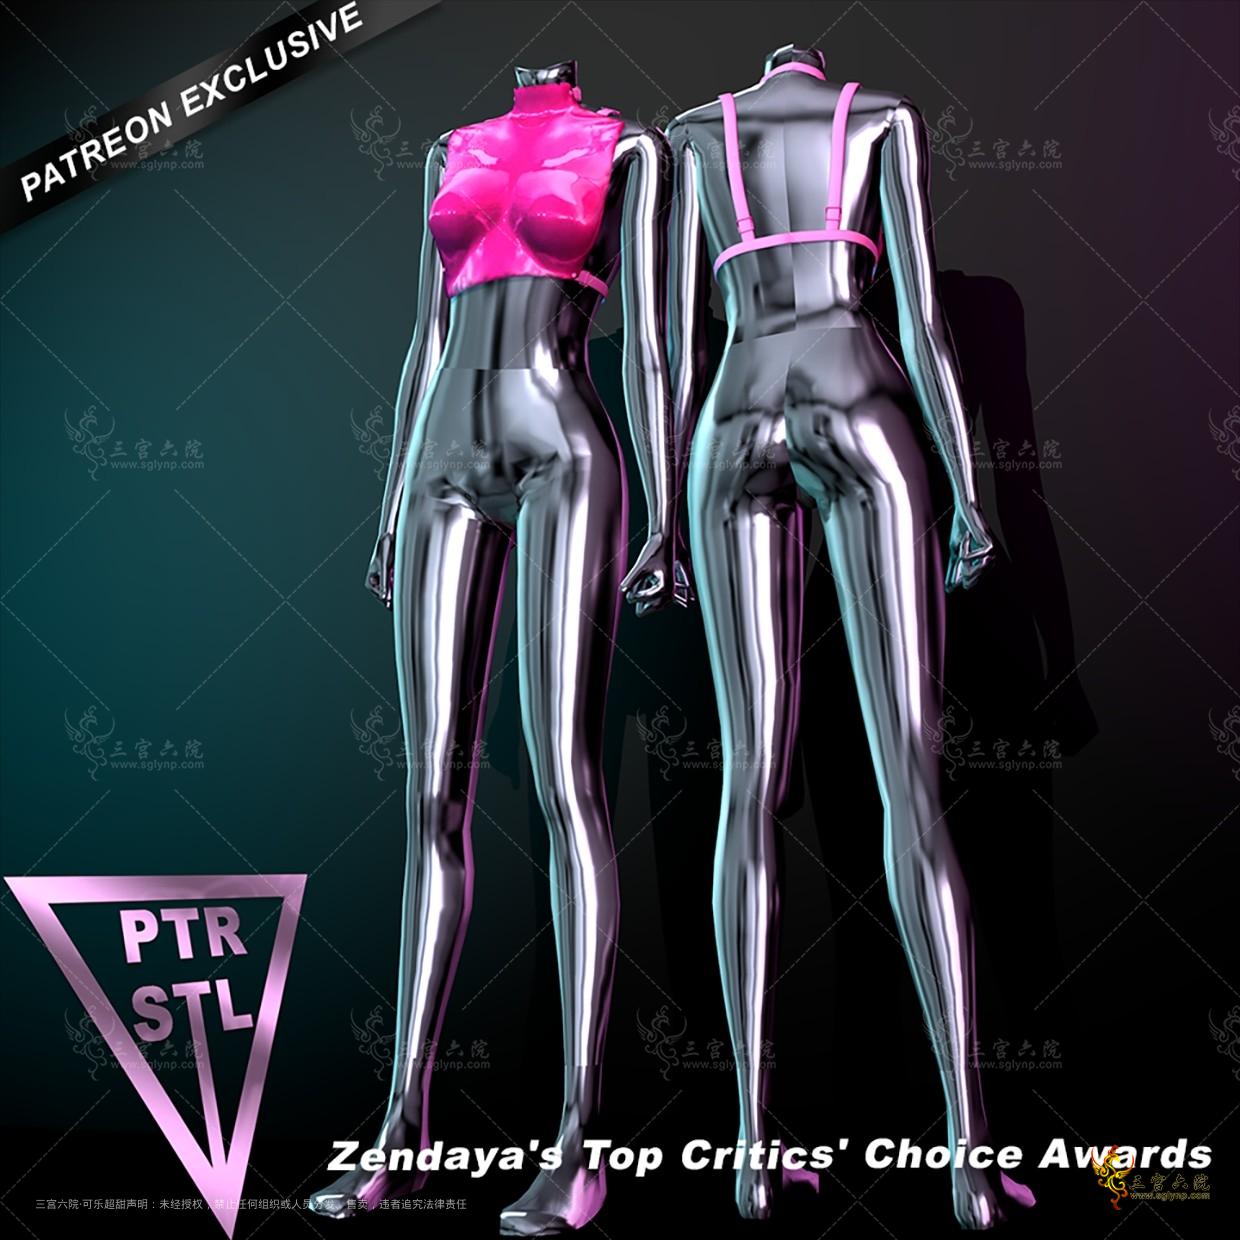 Pietro's Style Zendaya's Top Critics' Choice Awards.png